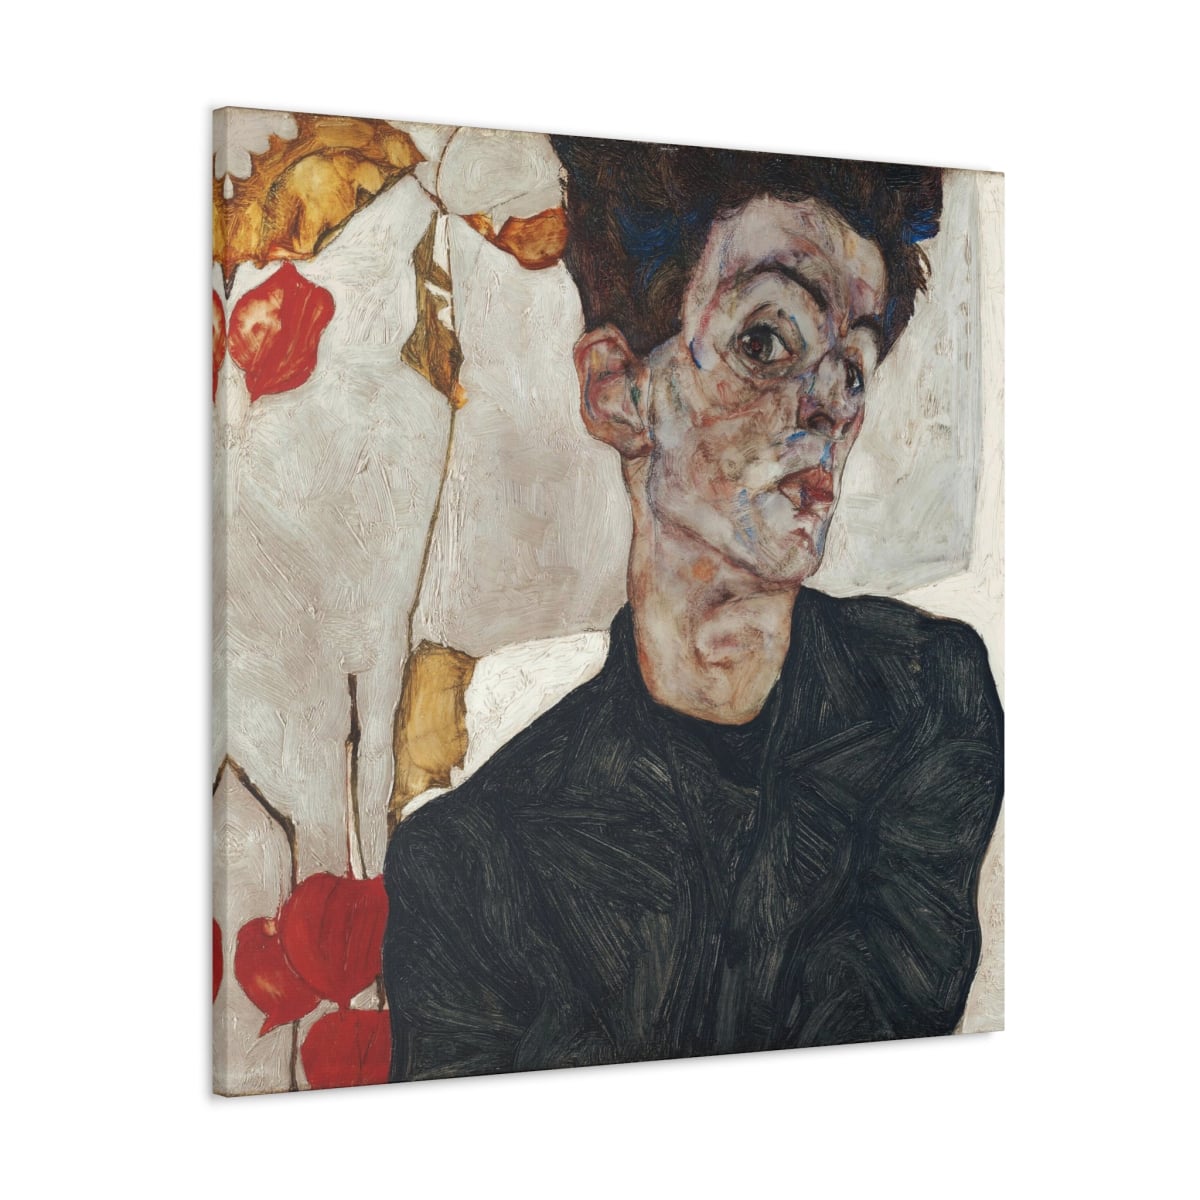 Egon Schiele’s Self-Portrait Canvas Wraps - Timeless Artistry